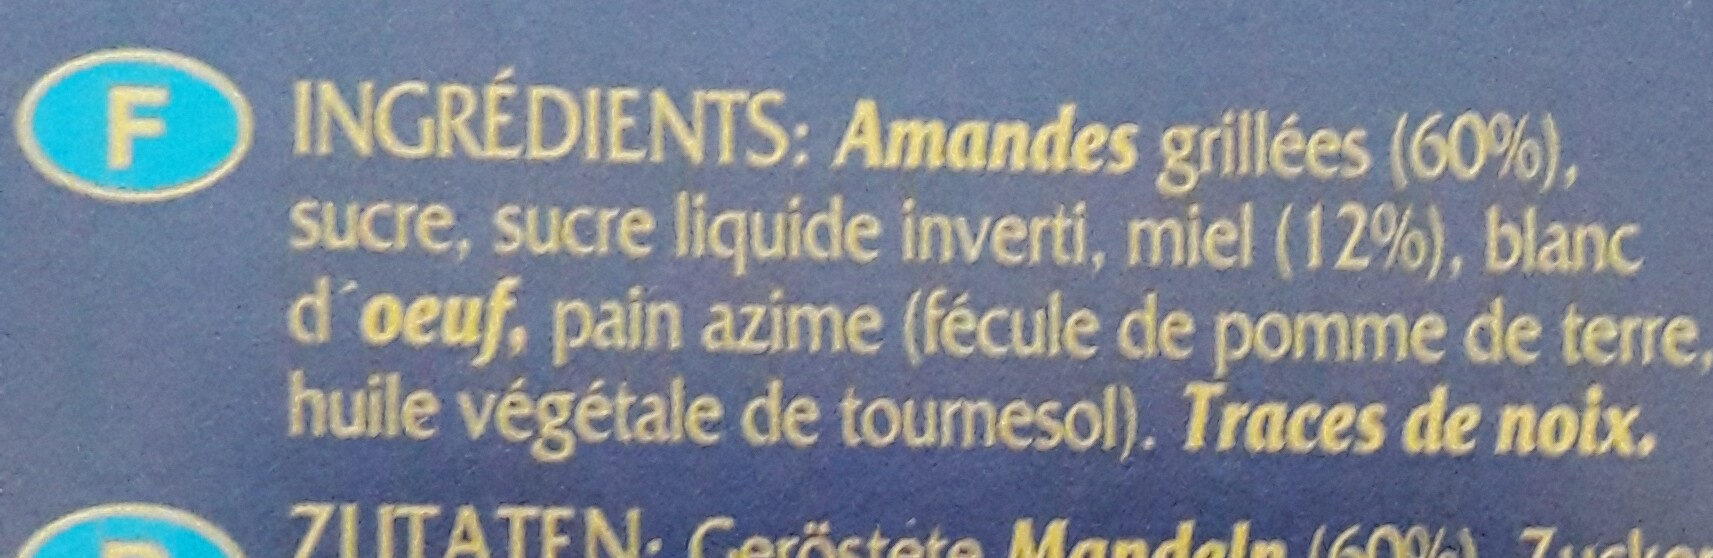 Turrón de Alicante - Ingredients - fr